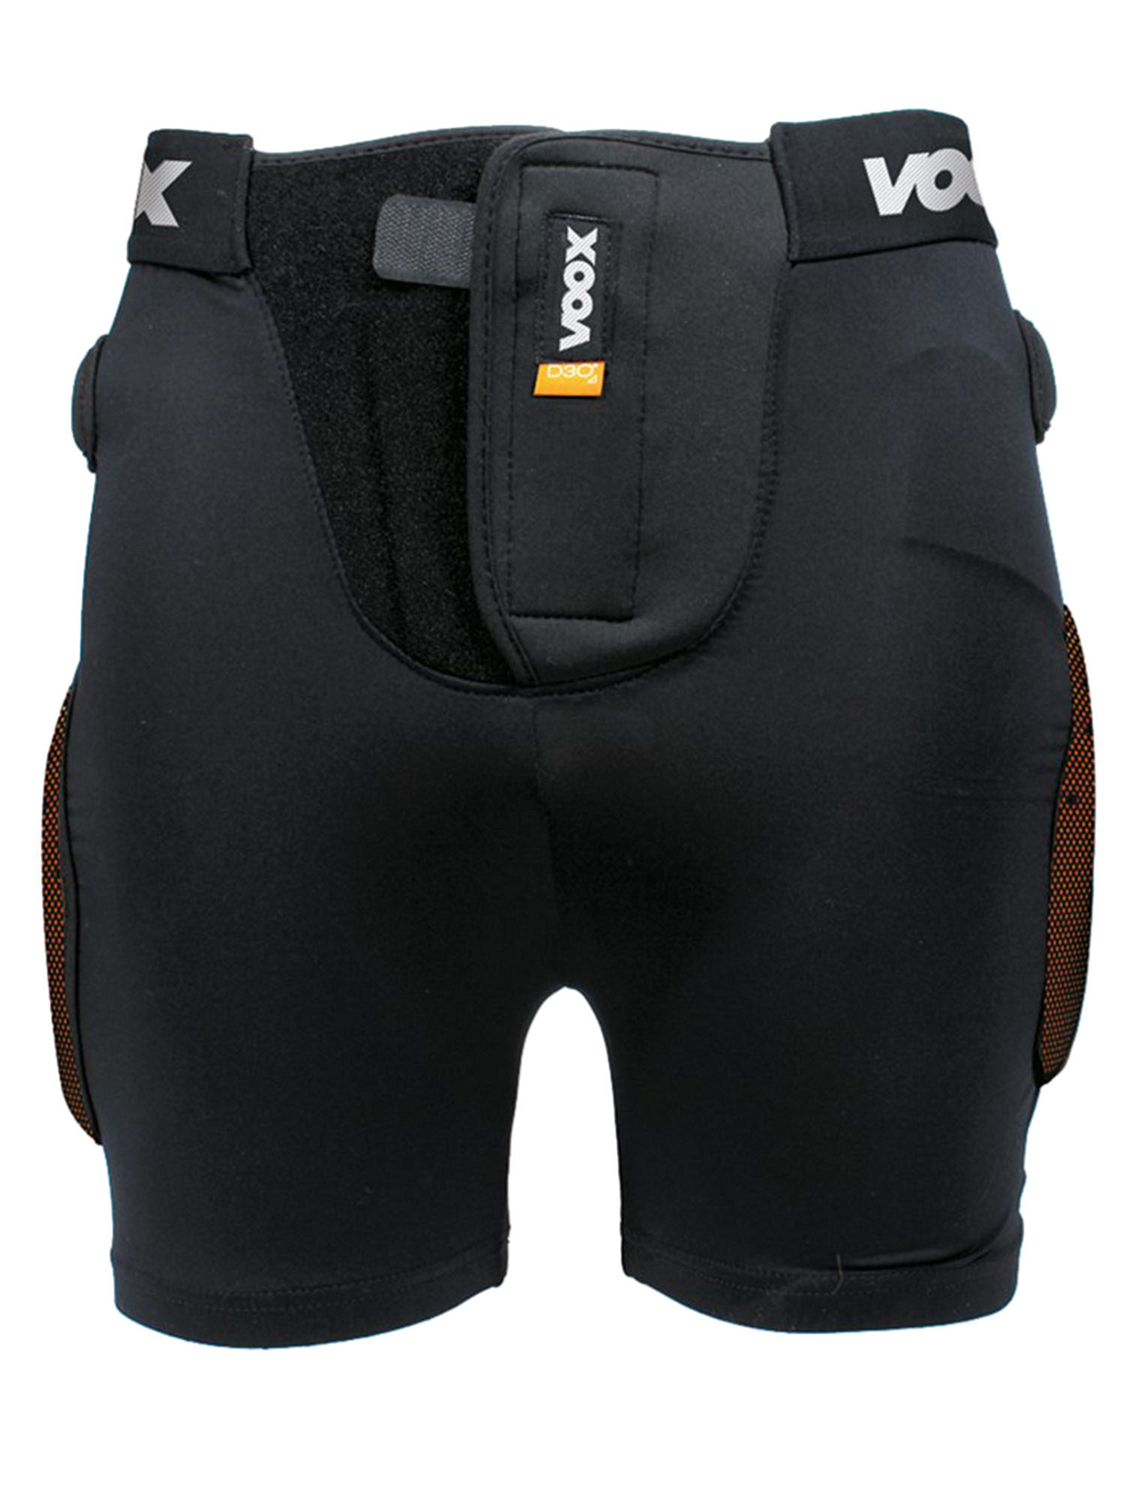 Защитные шорты Voox Short Protector